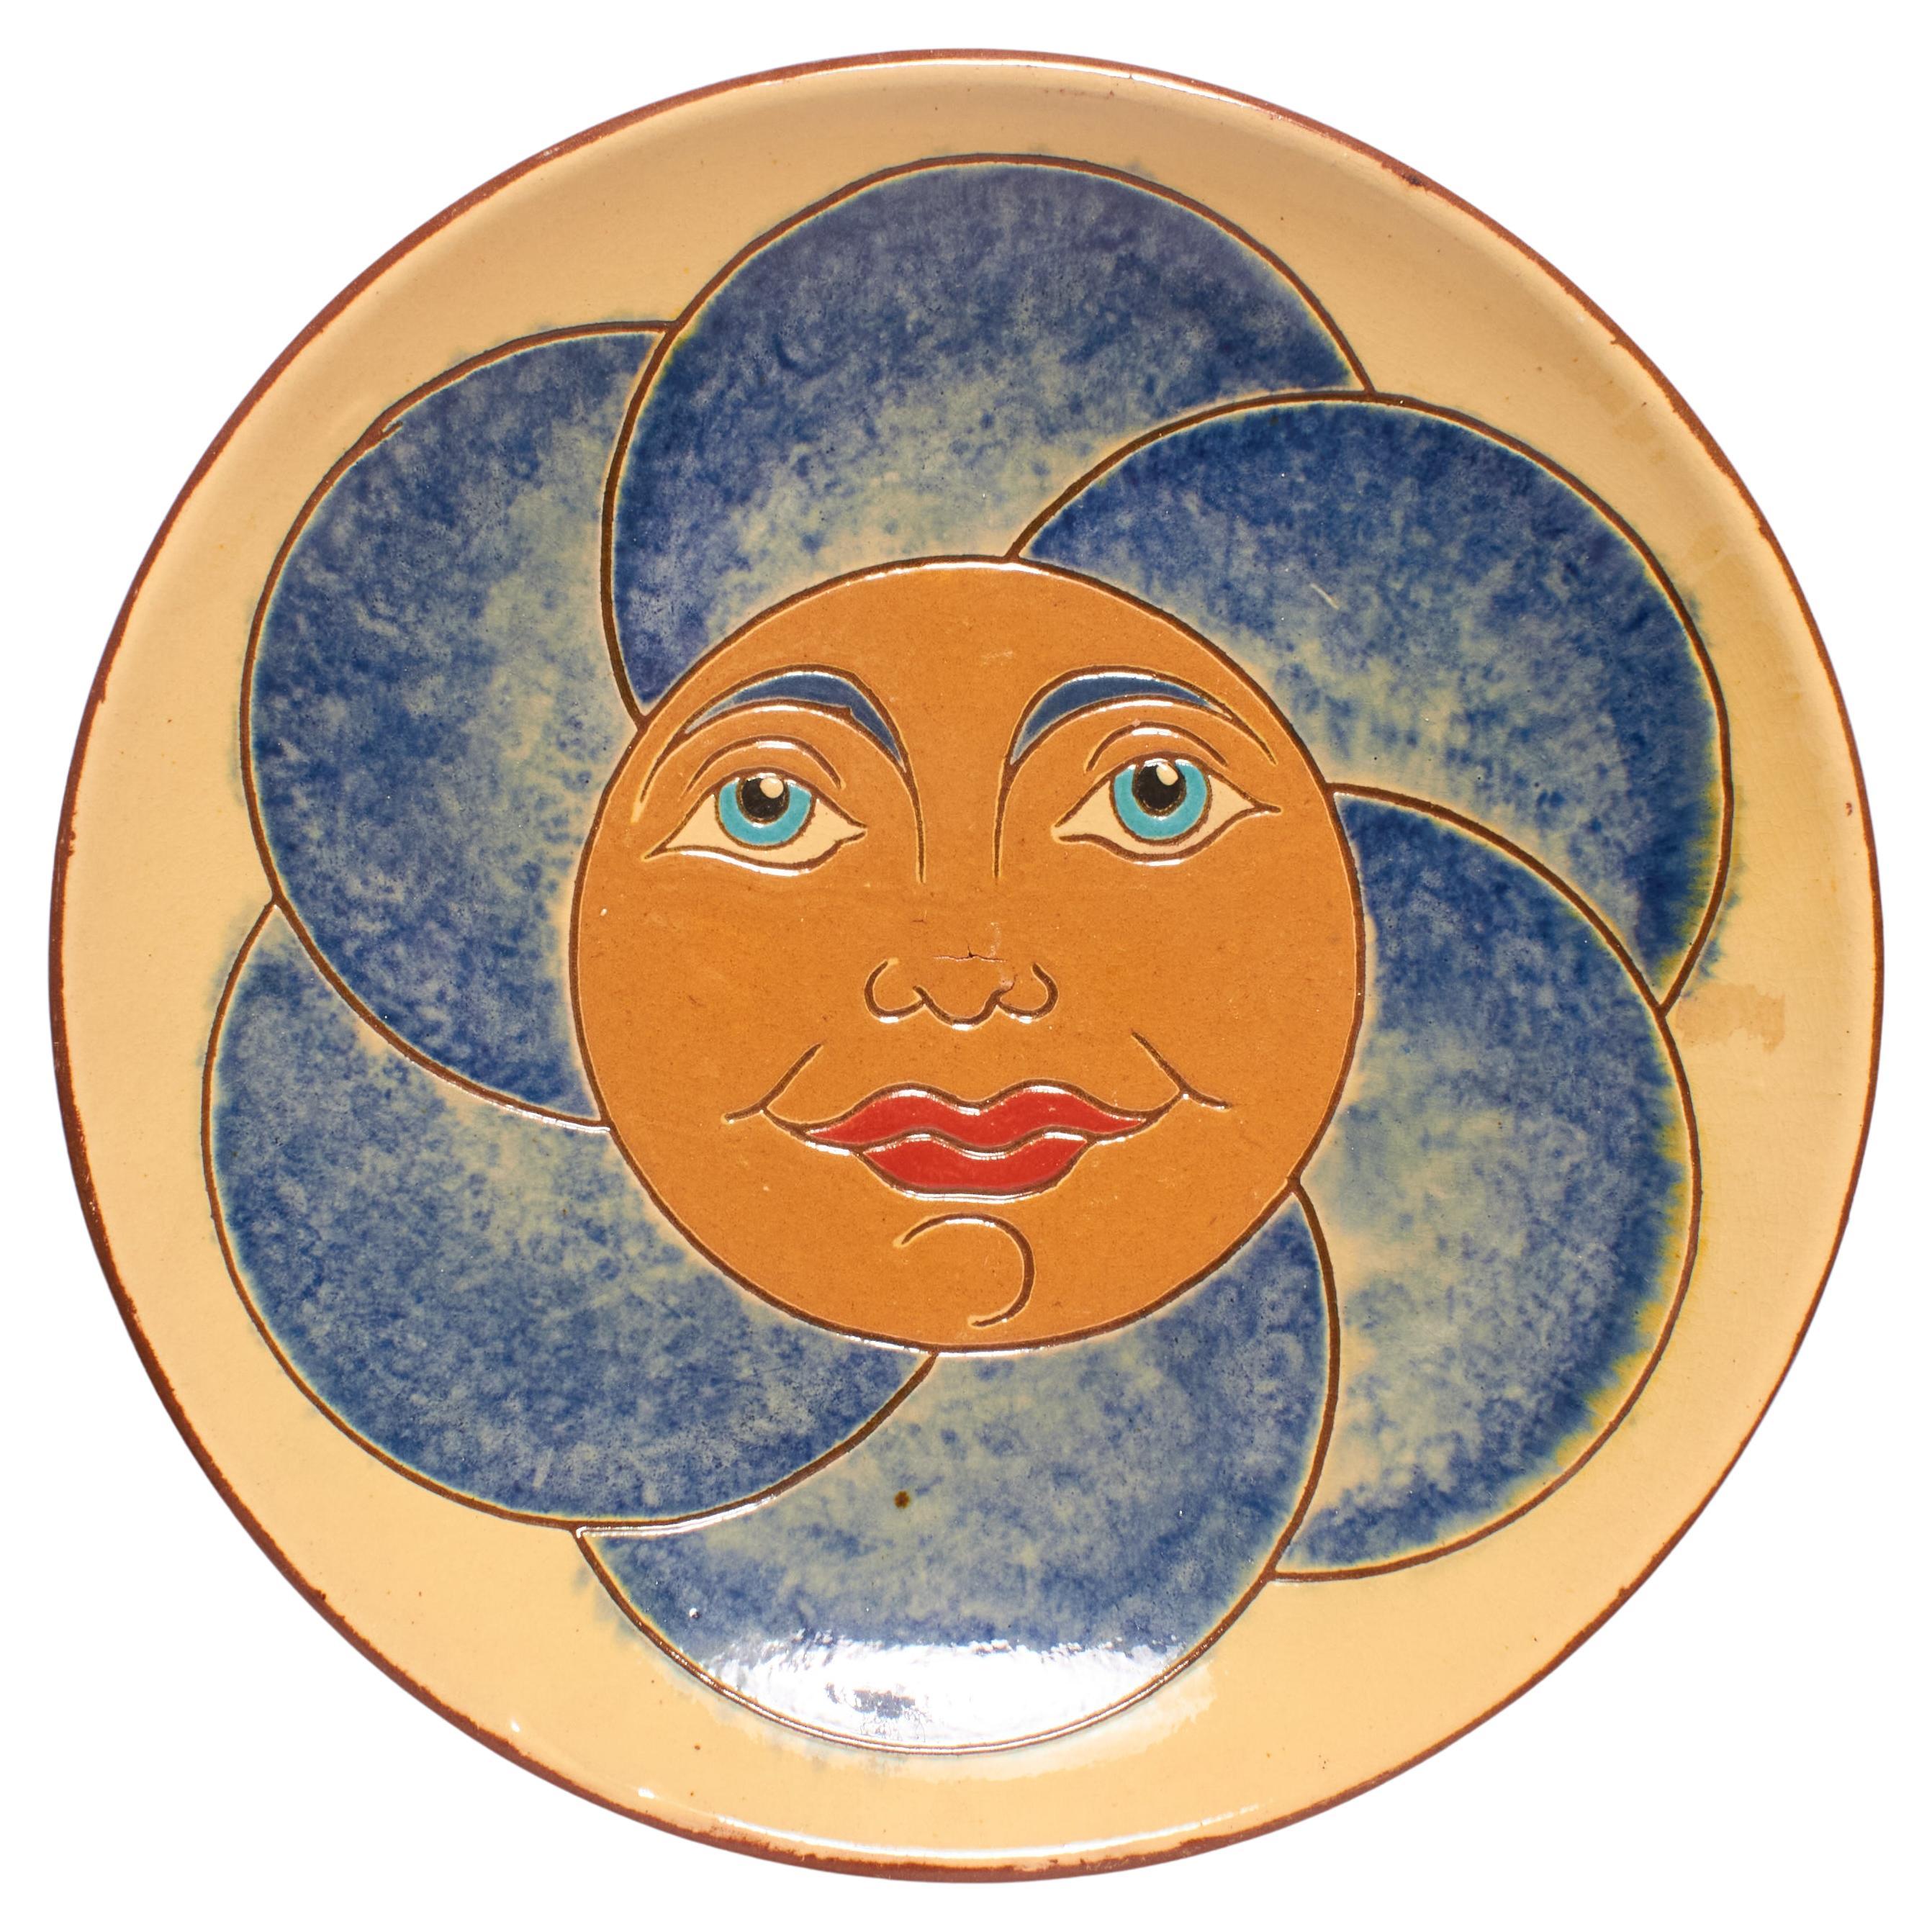 Handbemalter blau-orangefarbener Vintage-Keramikteller der Künstlerin Diaz Costa aus dem Jahr 1960